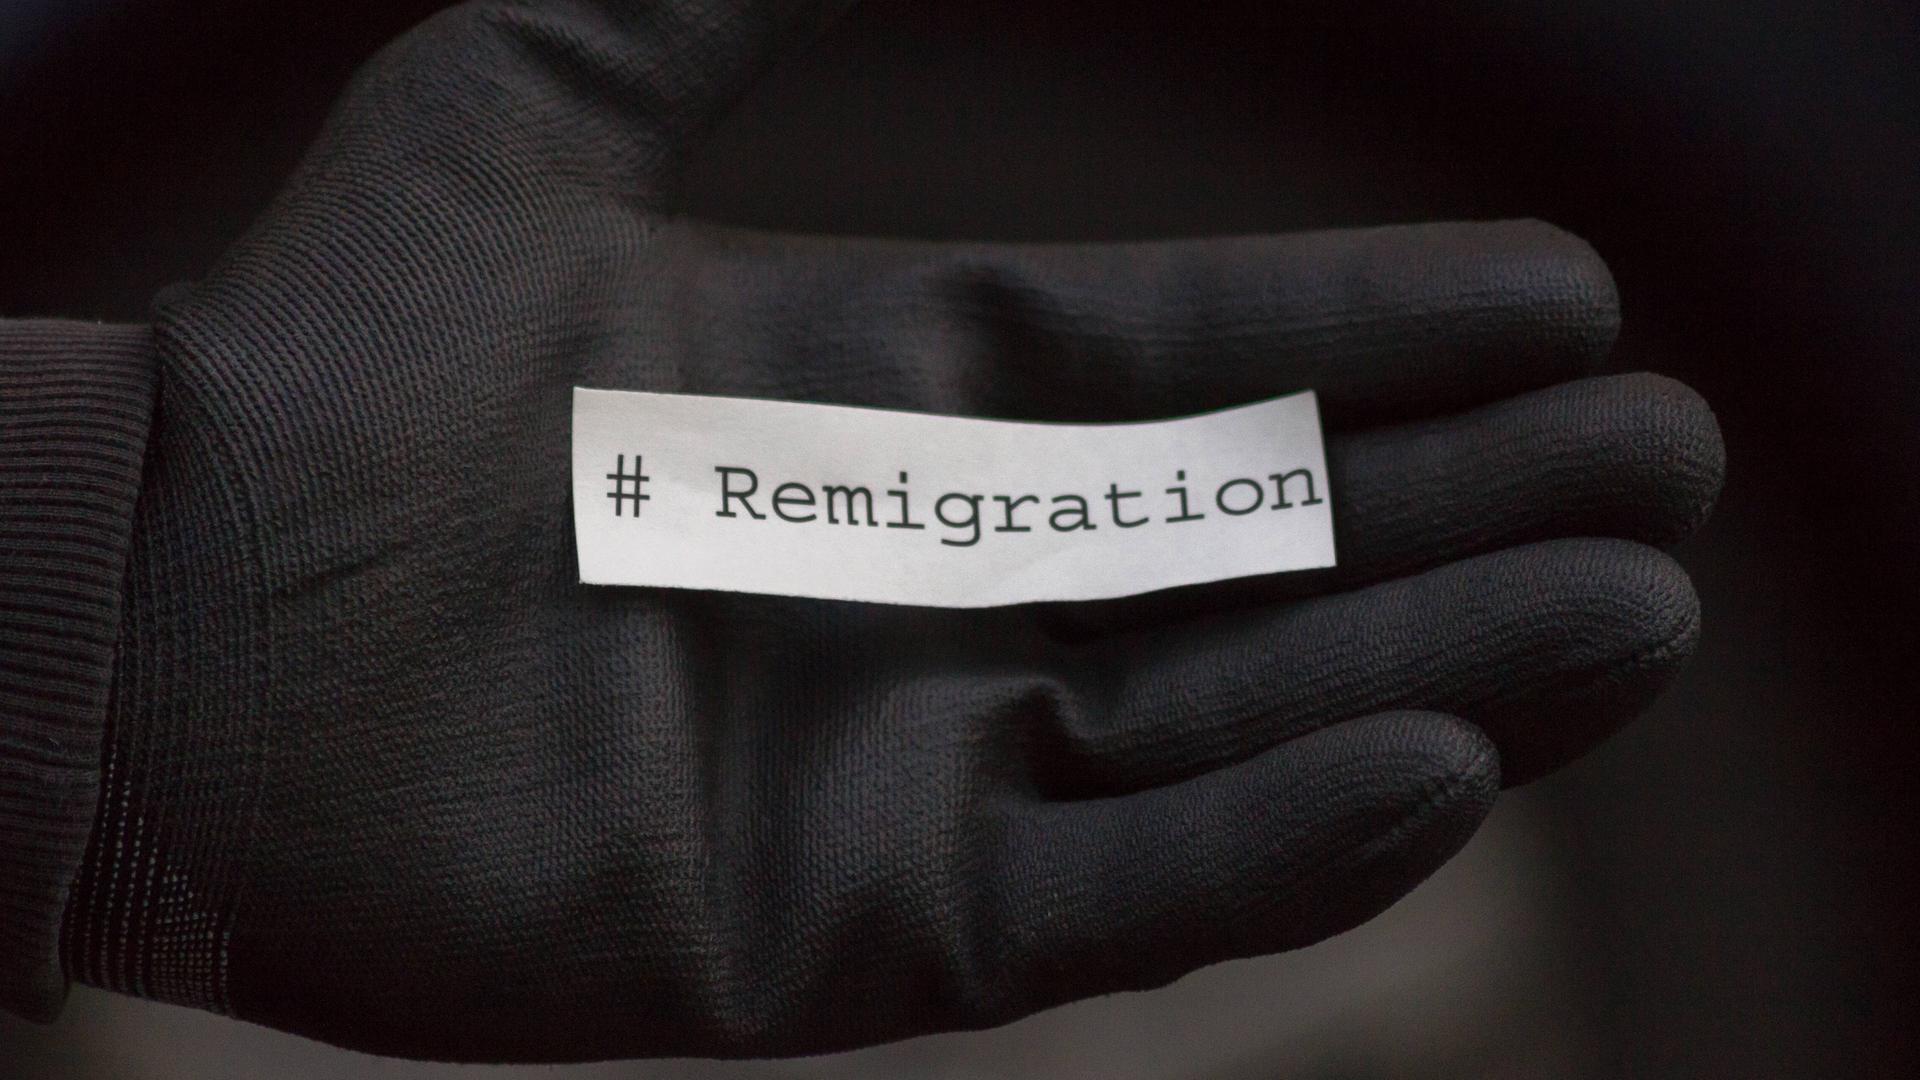 Ein schwarzer Handschuh auf dem sich ein Zettel mit der Aufschrift Remigration befindet.